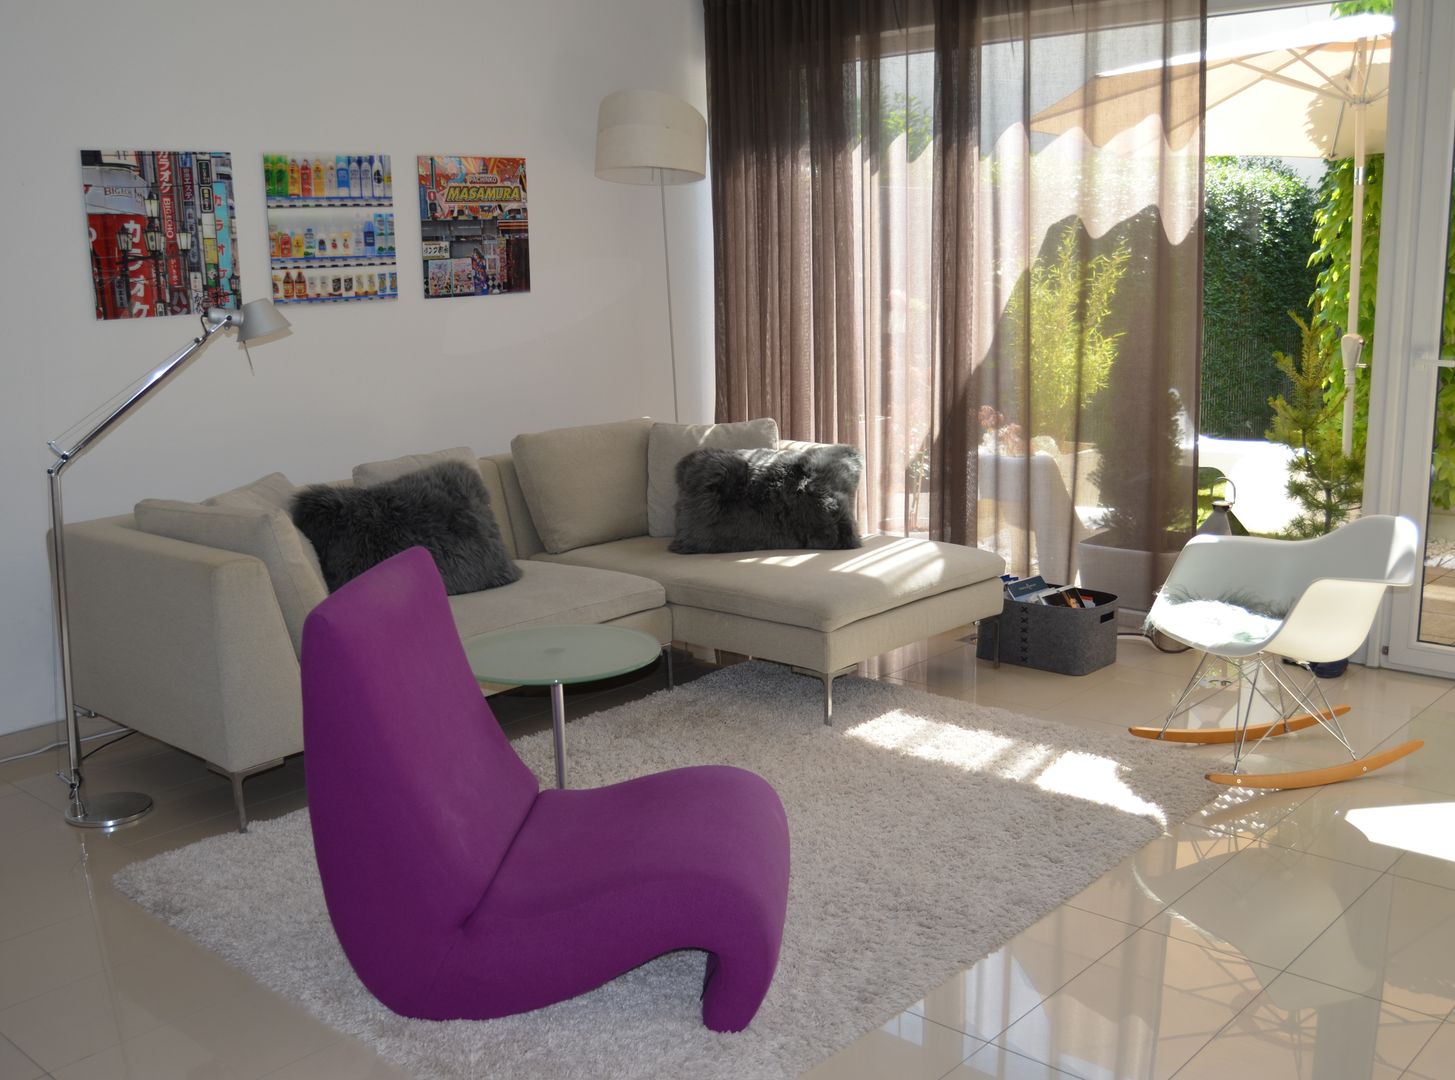 Haus U, Harmsen Innenarchitektur / ALL ABOUT DESIGN Harmsen Innenarchitektur / ALL ABOUT DESIGN Modern living room